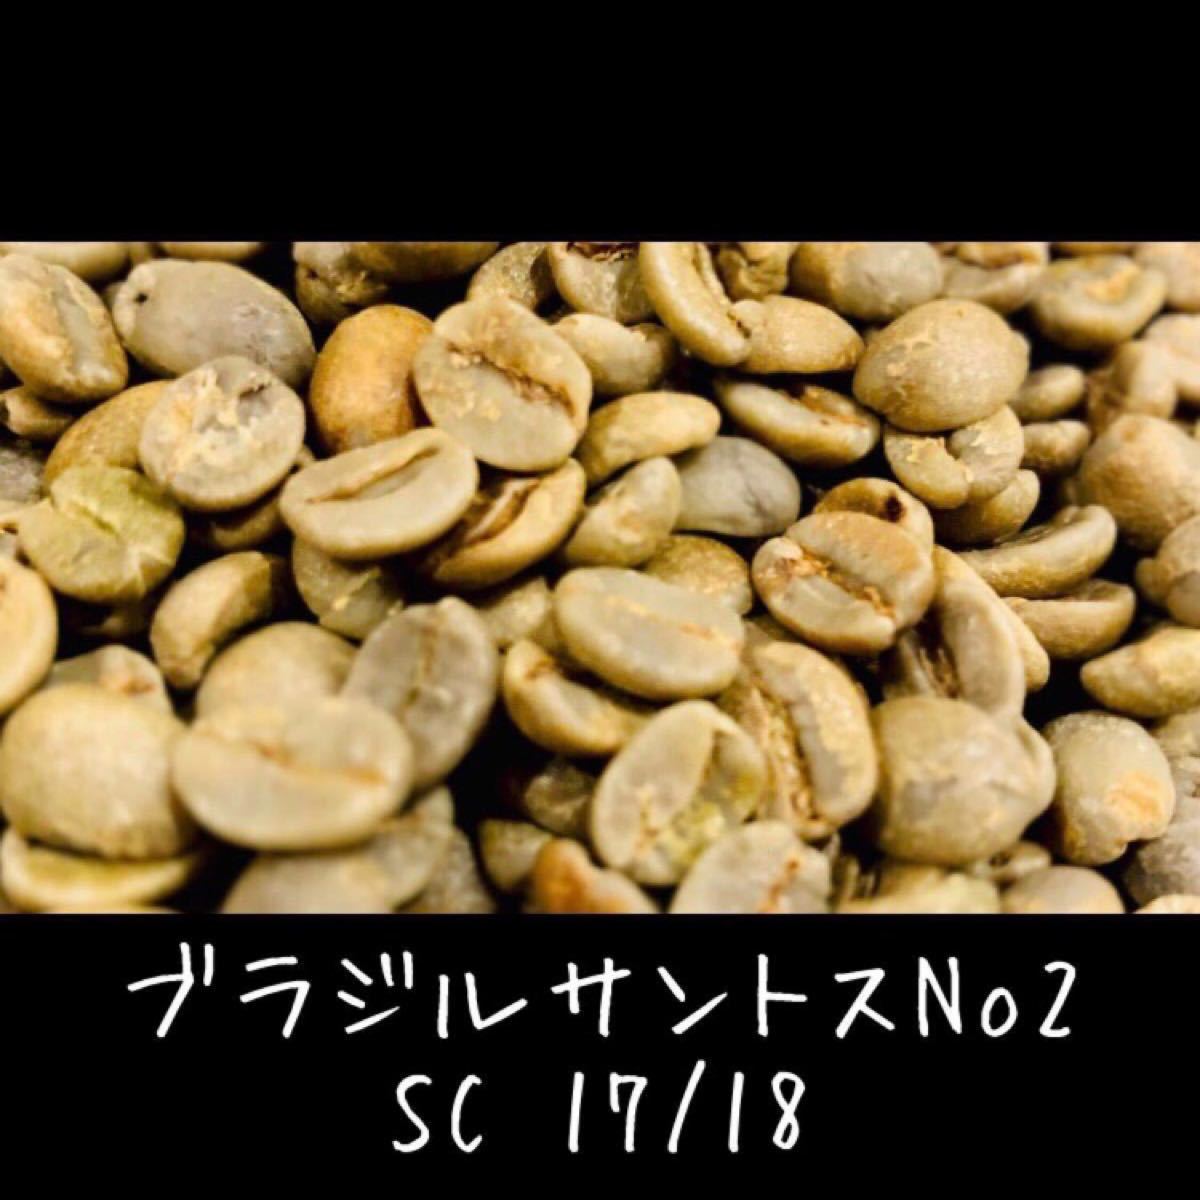 ブラジルサントスNo2 生豆 自家焙煎用 珈琲豆 コーヒー豆 800g 送料無料